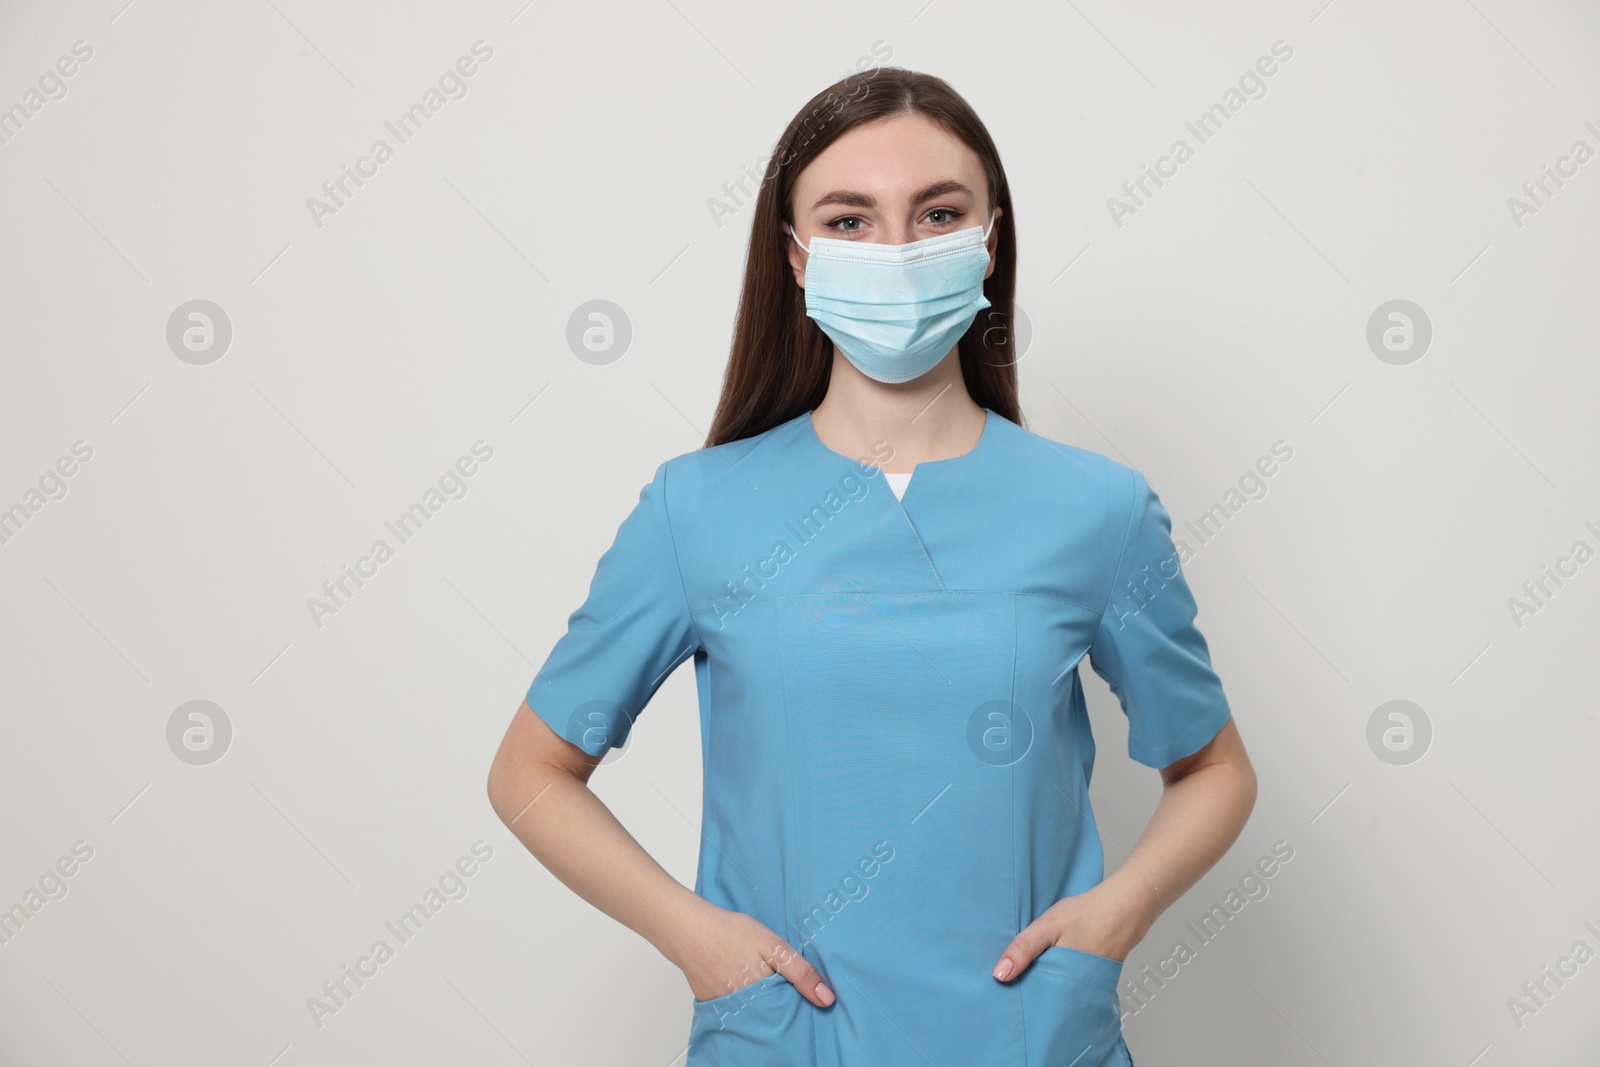 Photo of Nurse with medical mask on white background